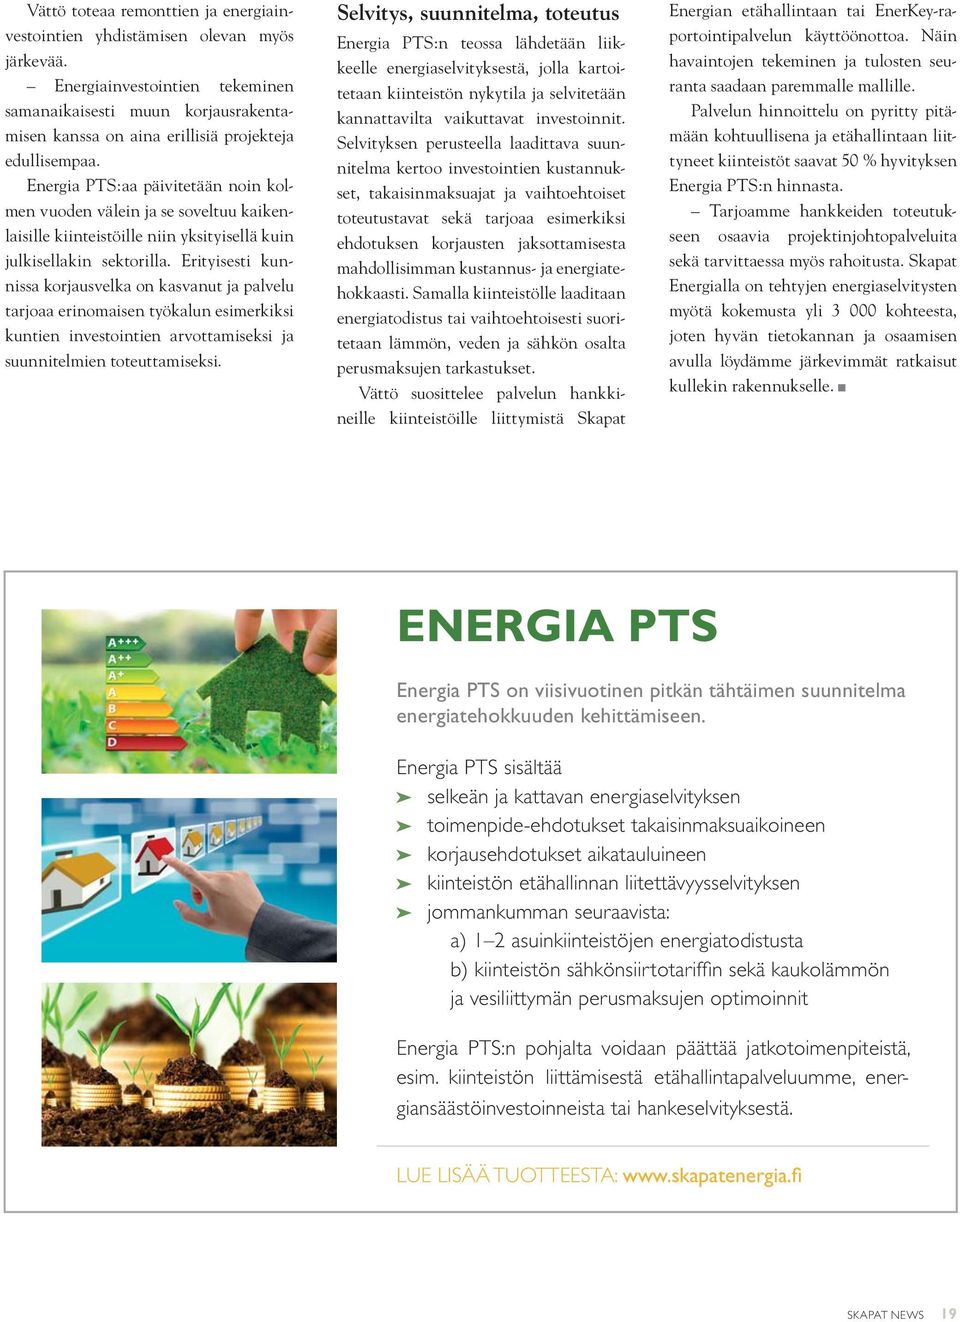 Energia PTS:aa päivitetään noin kolmen vuoden välein ja se soveltuu kaikenlaisille kiinteistöille niin yksityisellä kuin julkisellakin sektorilla.